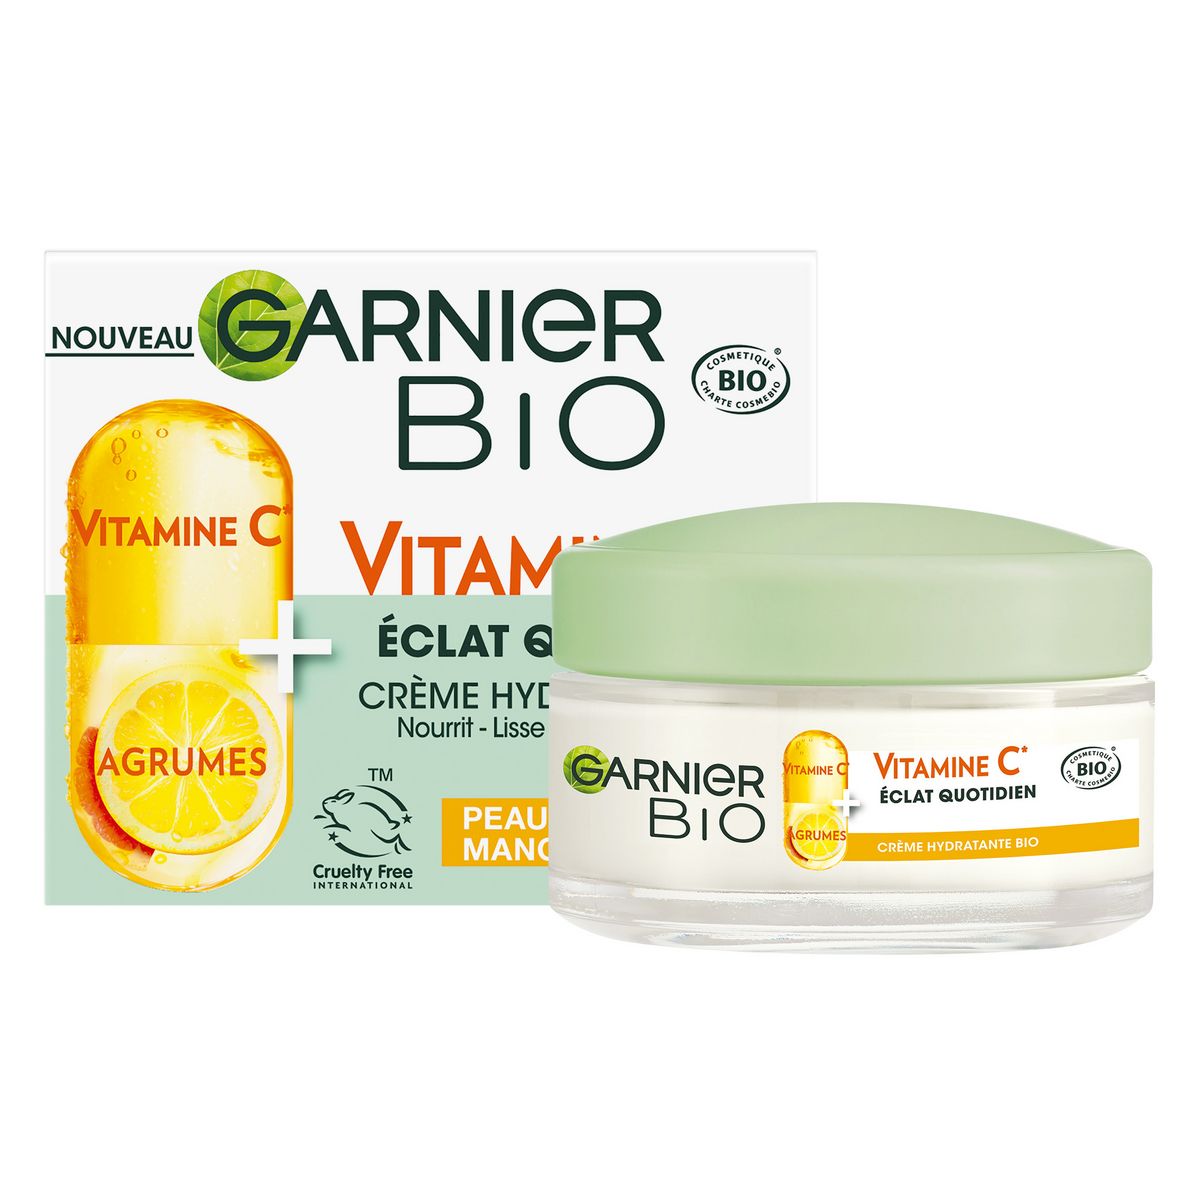 GARNIER BIO Crème hydratante bio à la vitamine C et agrumes pour peau terne 50ml